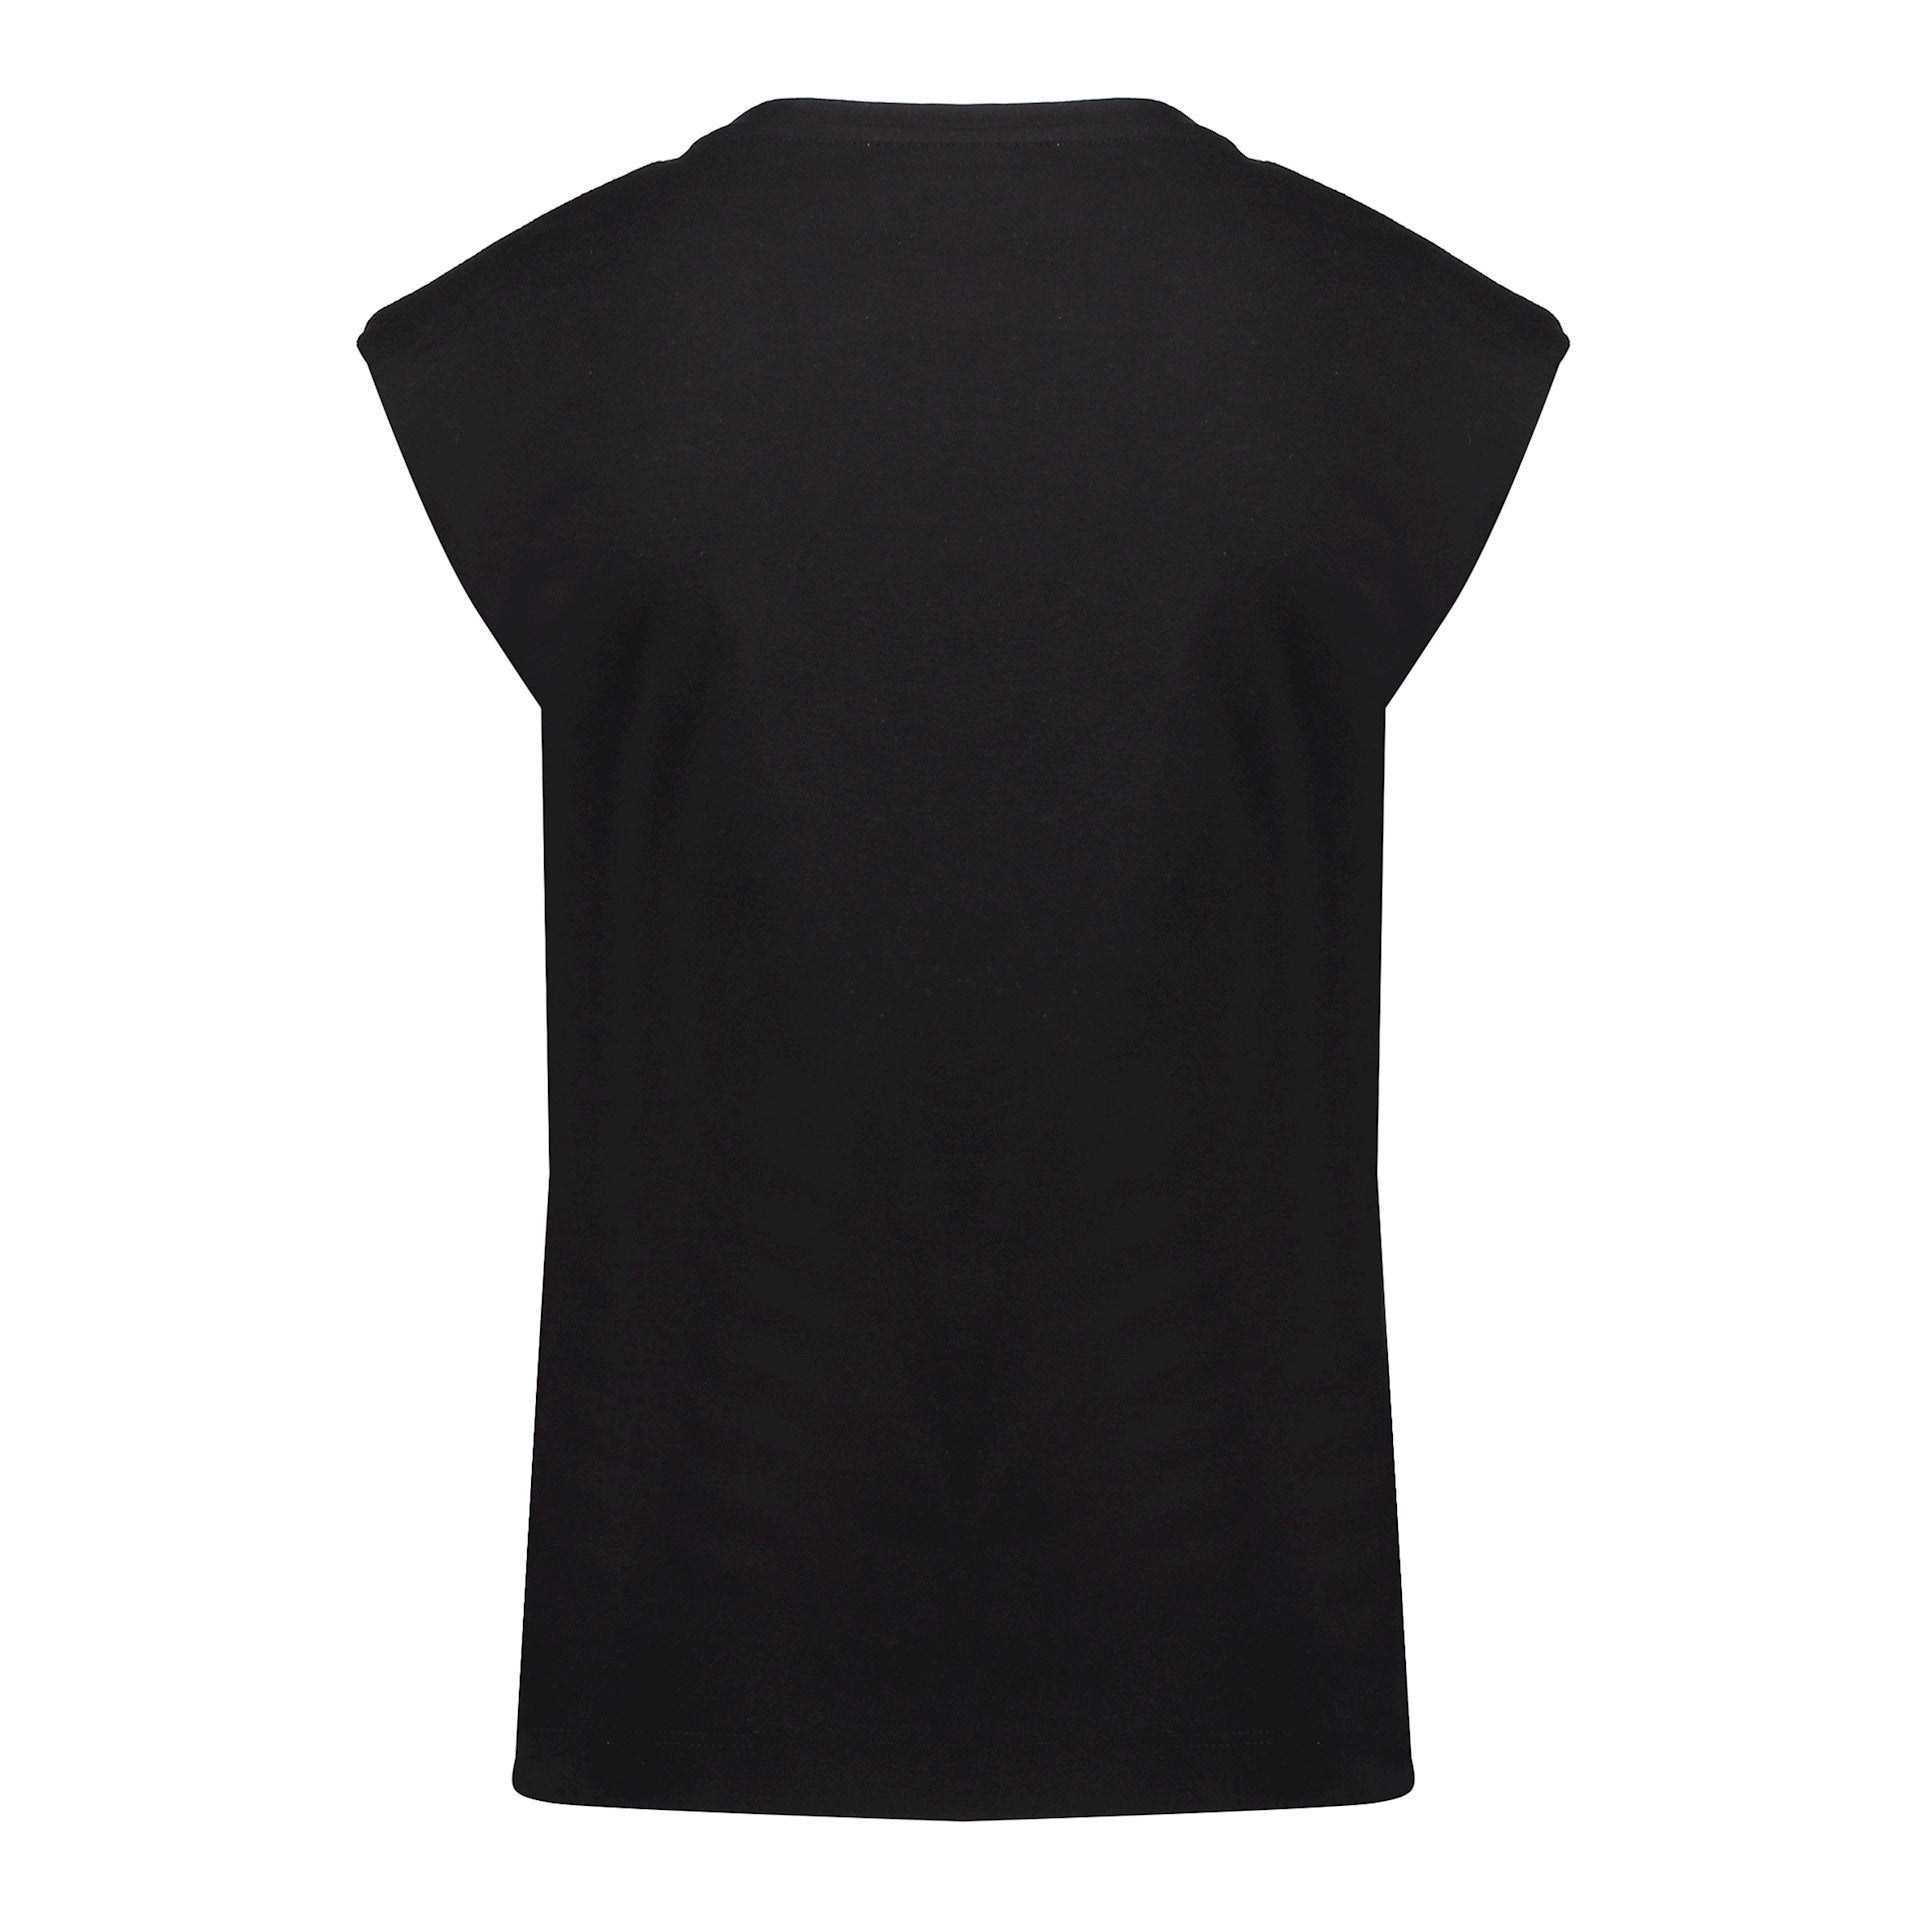 Meisjes T-shirt padded shoulders van Geisha in de kleur Black in maat 176.